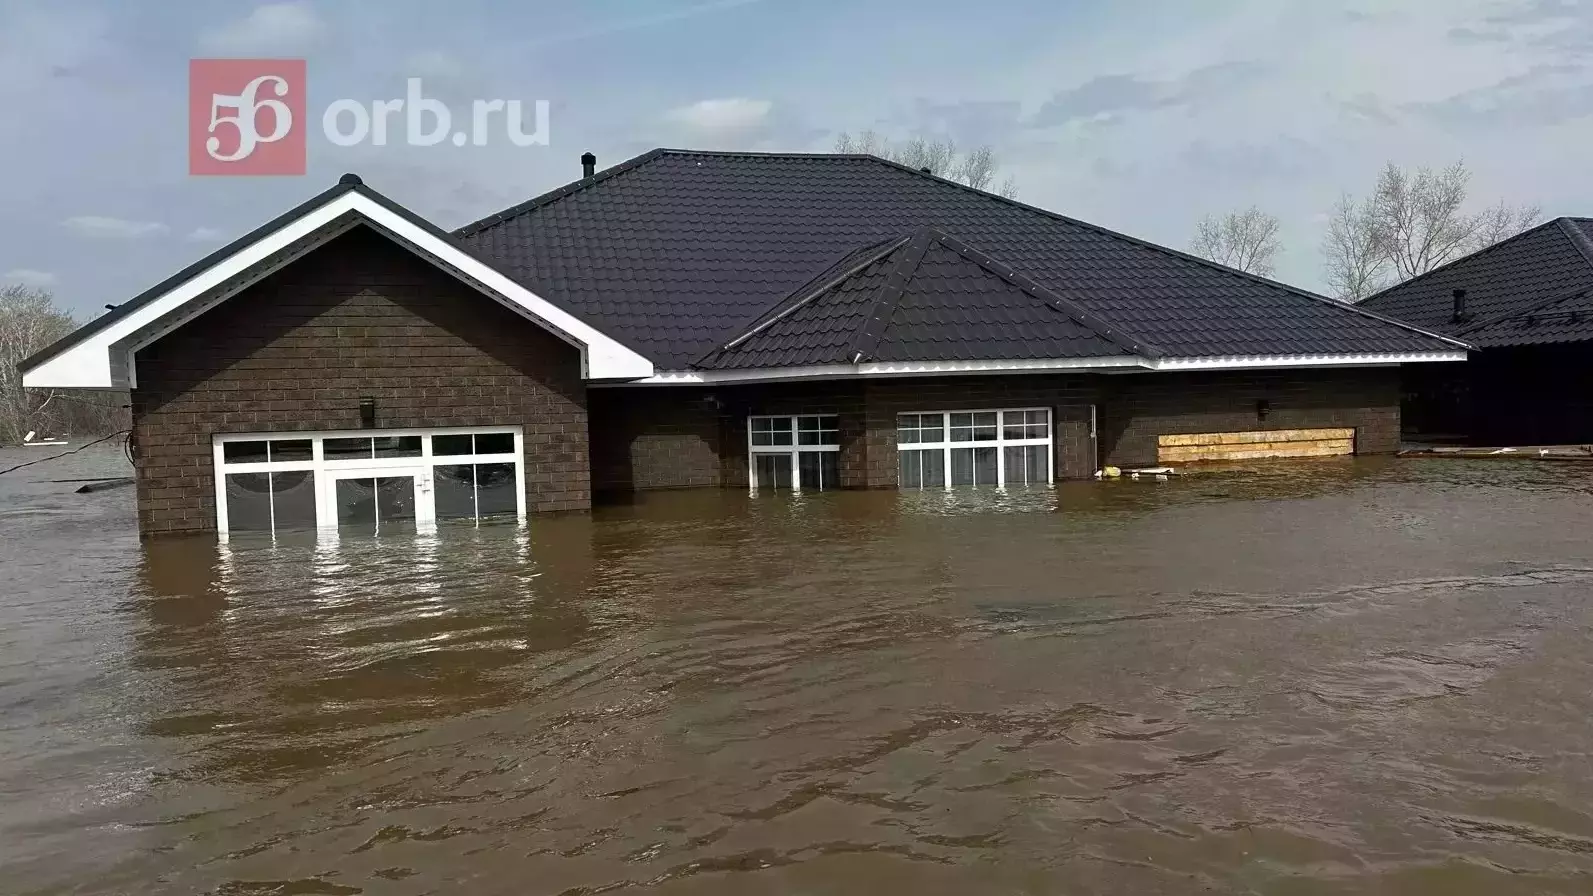 Во время паводка дома в Оренбурге уходили под воду по крышу